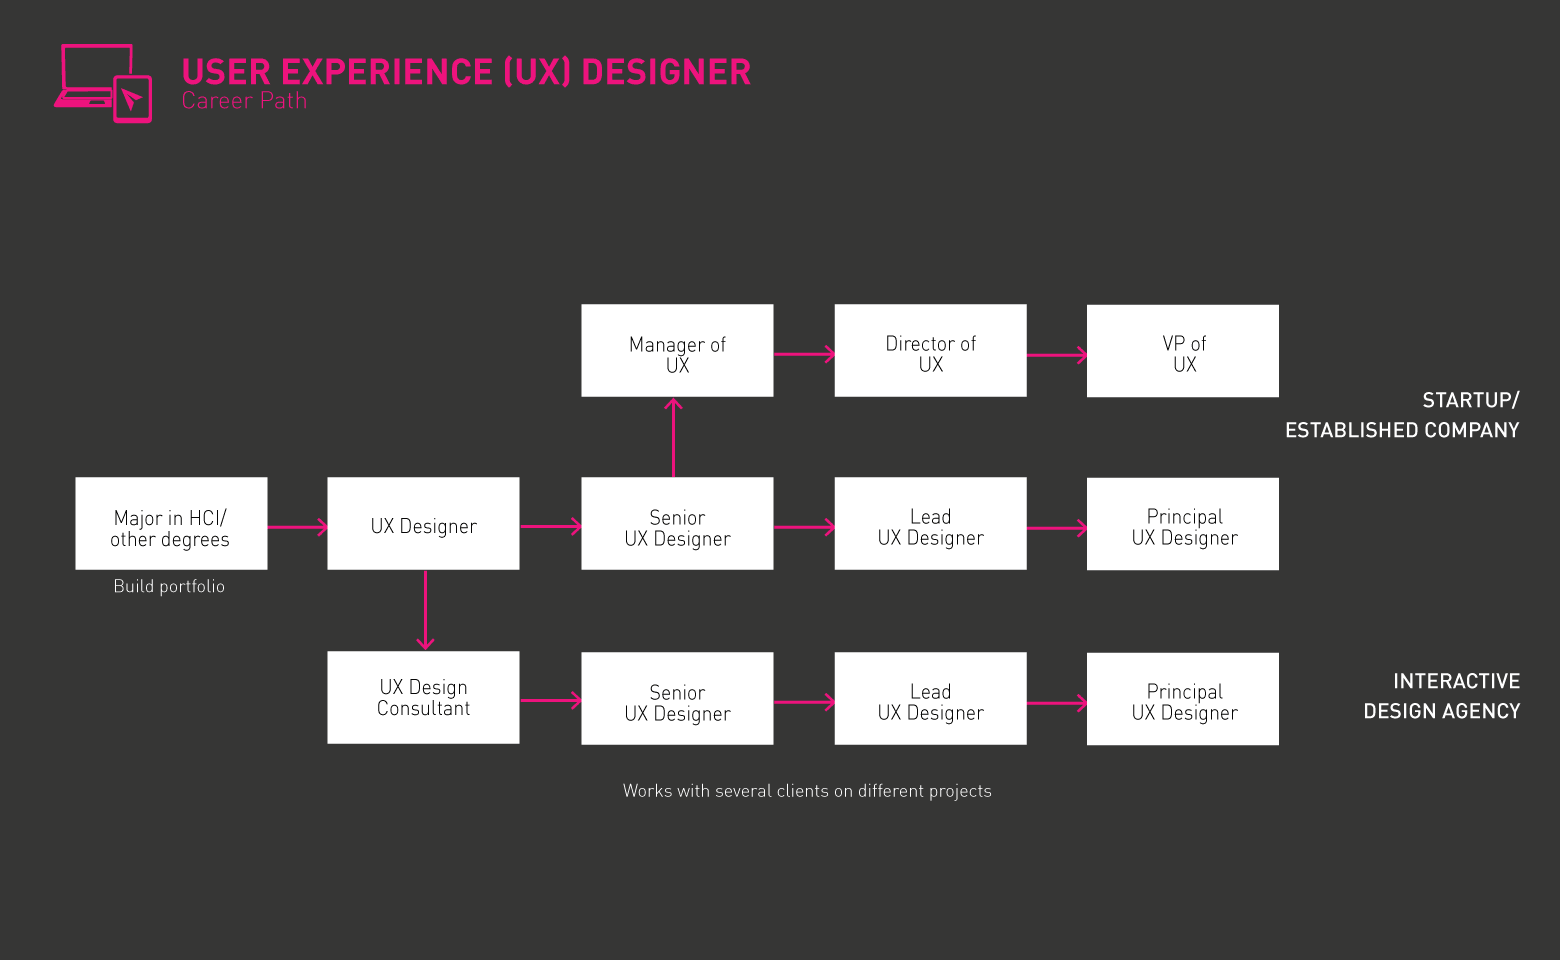 Tipikal na Roadmap ng UX Designer